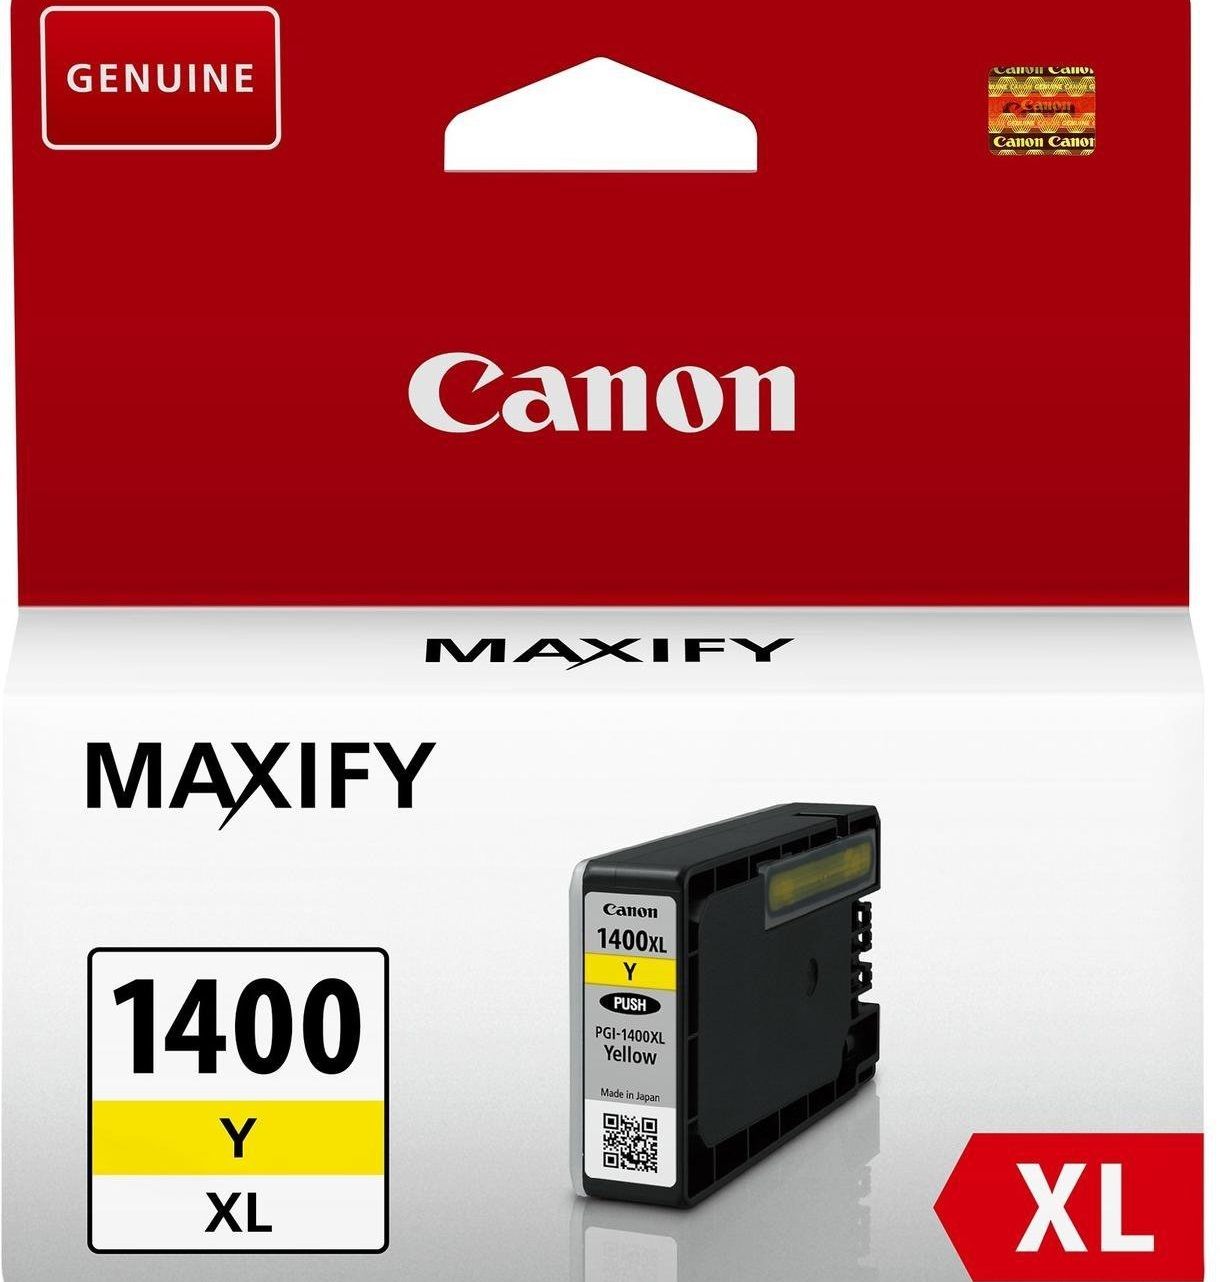 Чернильный картридж Canon PGI-1400XL Yellow (желтый) для MAXIFY MB2040/2340/2140/2740